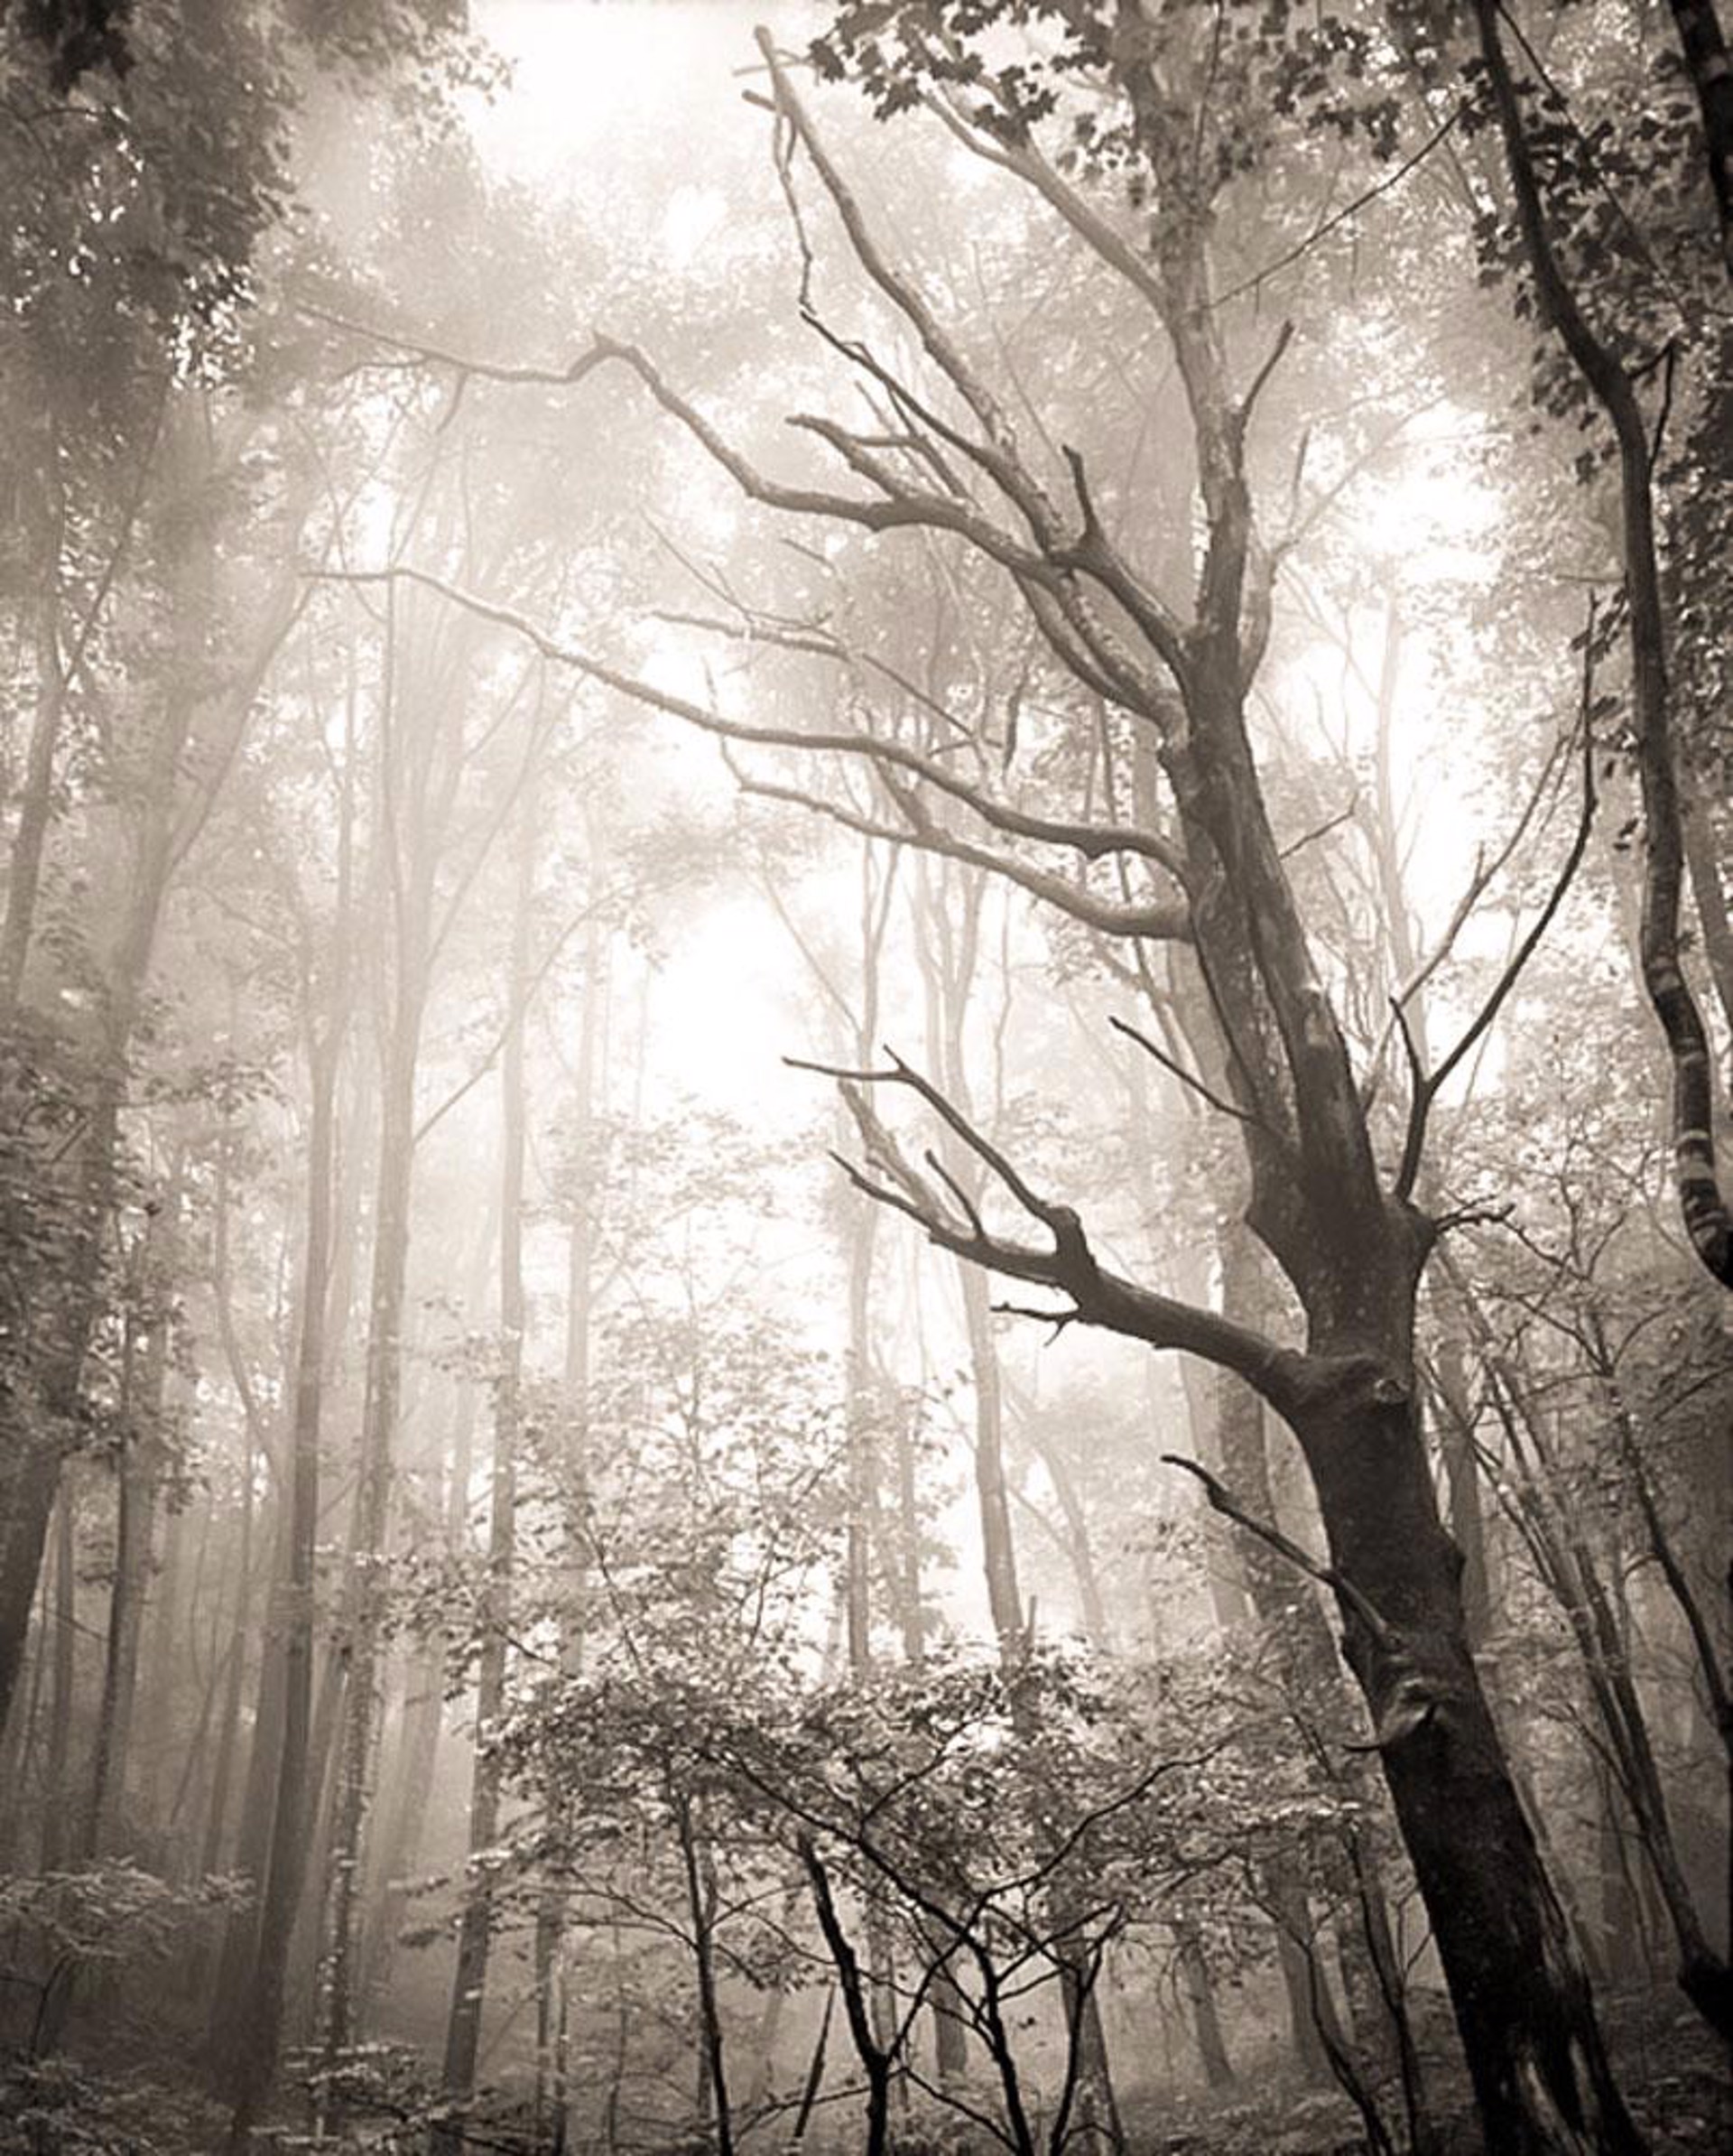 (#010) Dead Tree in the Fog by Frank Hunter